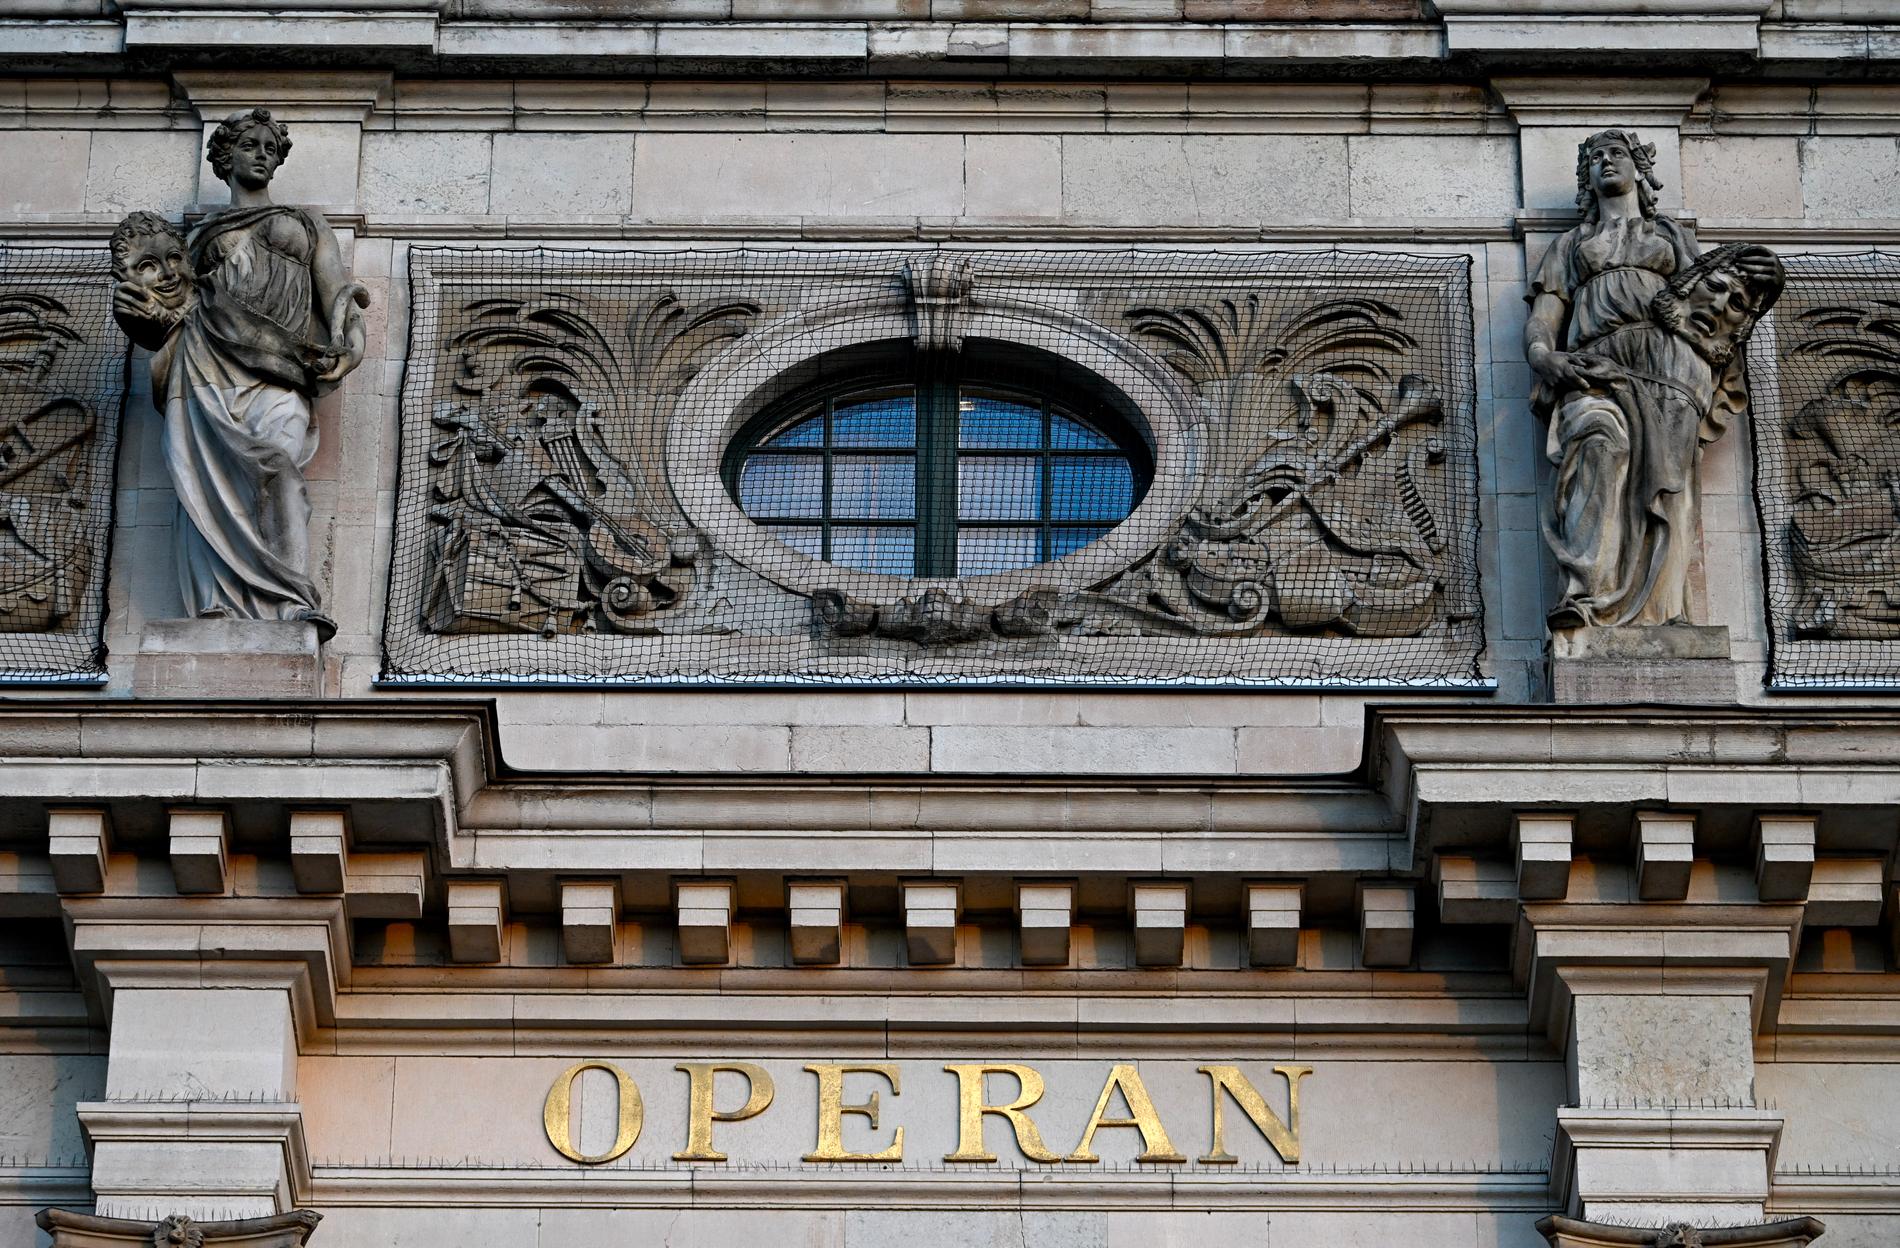 I vår renoveras vissa delar av fasaden i väntan på att regeringen tar beslut om renovering och utbyggnad av Kungliga Operan i Stockholm.